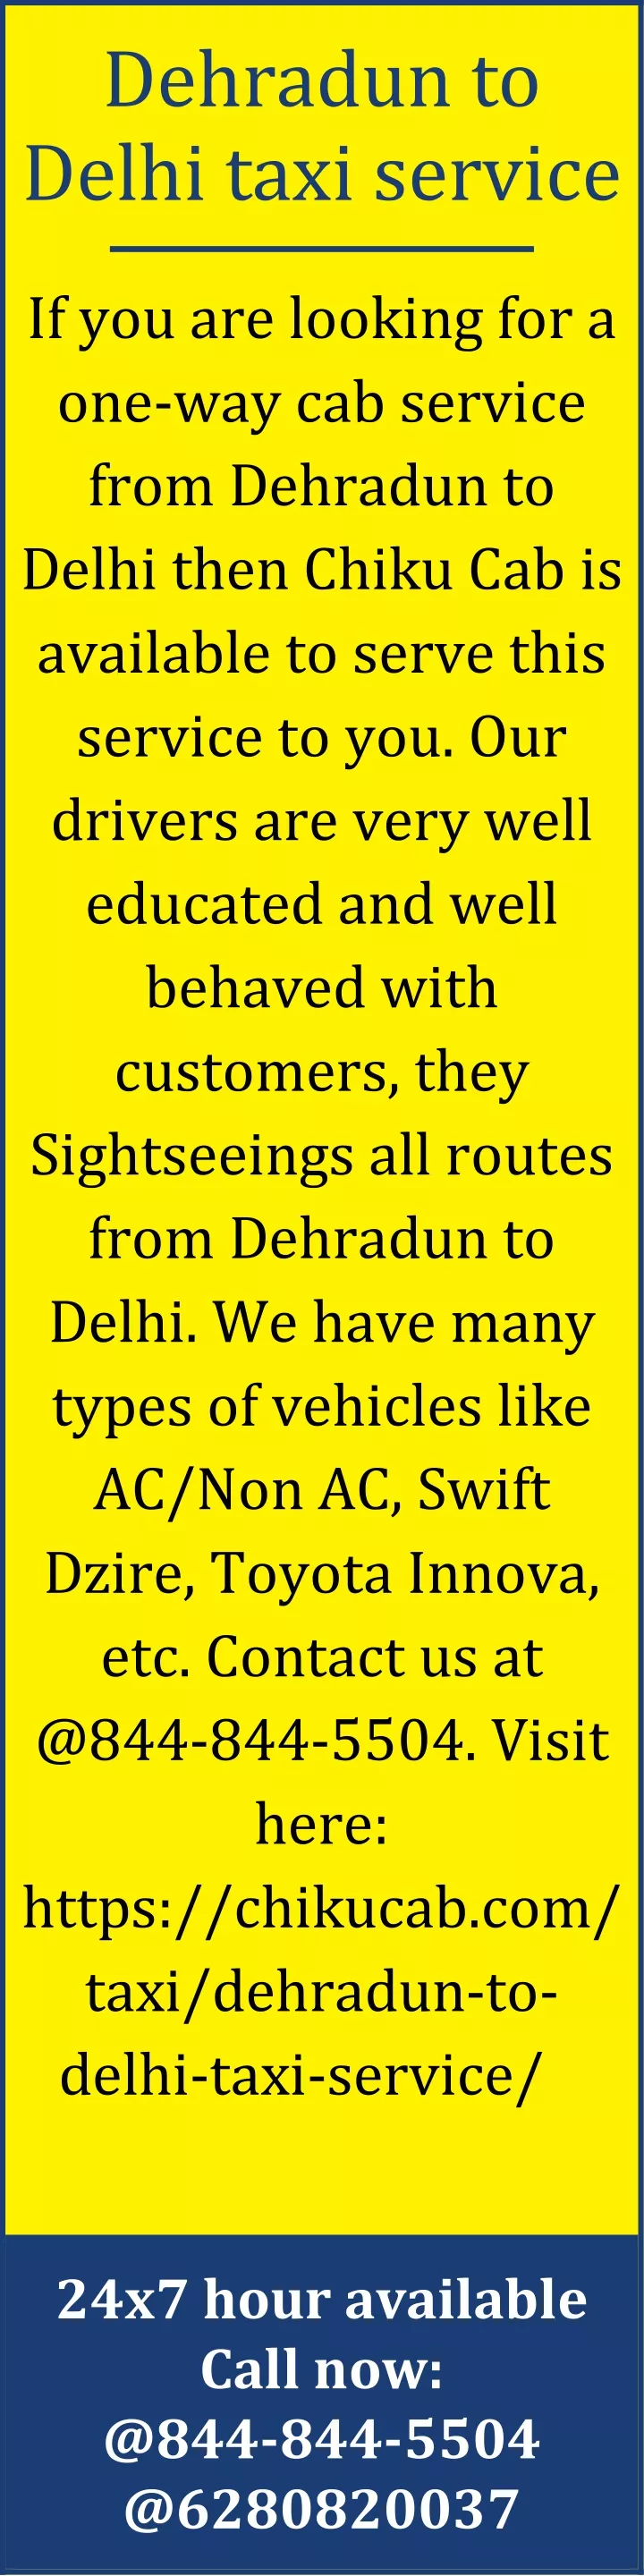 dehradun to delhi taxi service